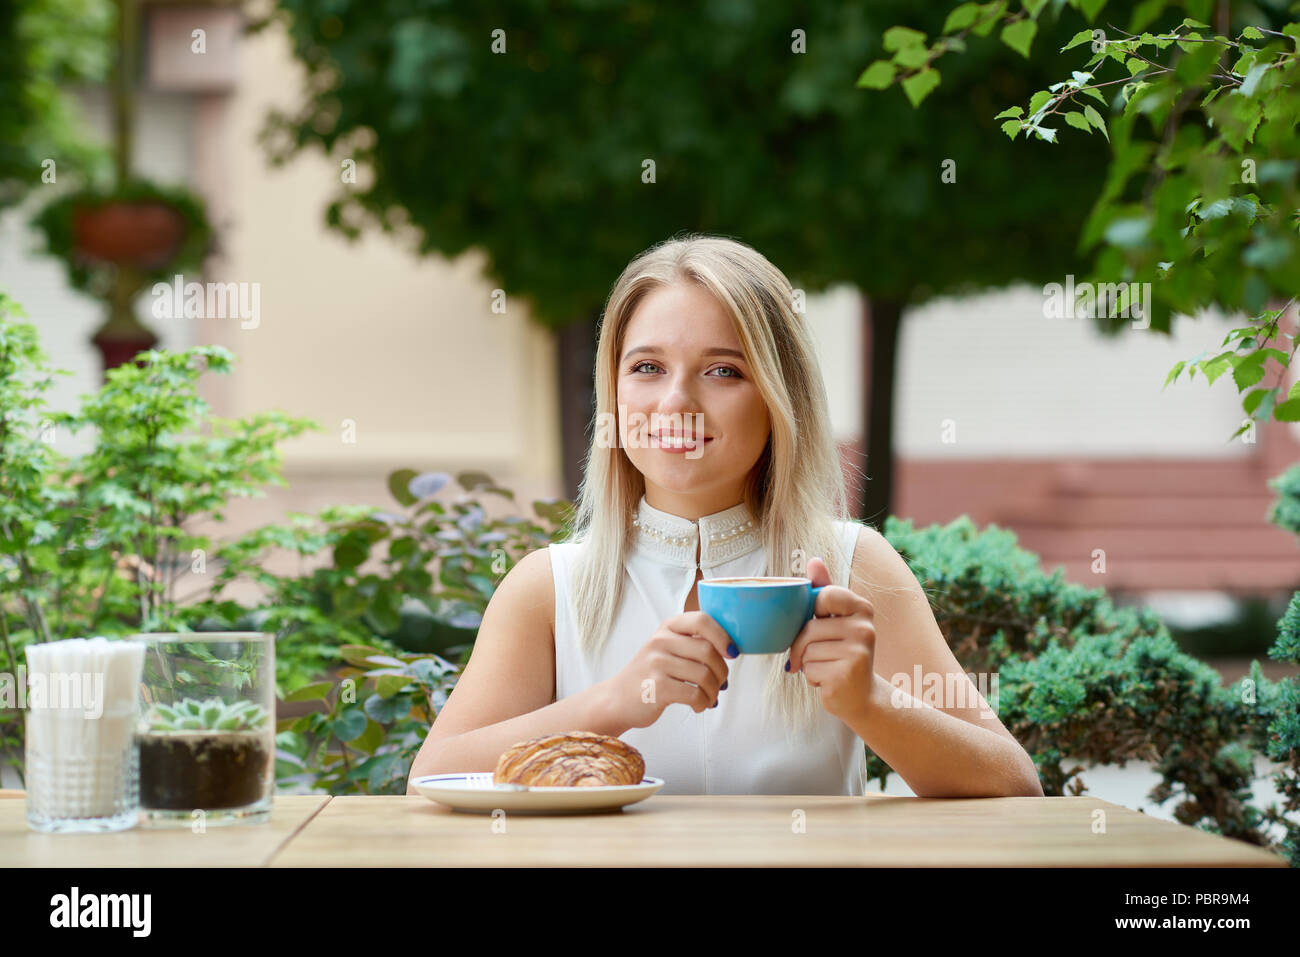 Jolie fille assise sur l'extérieur cafe lodge de boire du café, manger un  croissant. Avoir beau sourire, cheveux blonds, yeux bleus, portant chemise  blanche. Les plantes vertes et d'arbres sur fond de